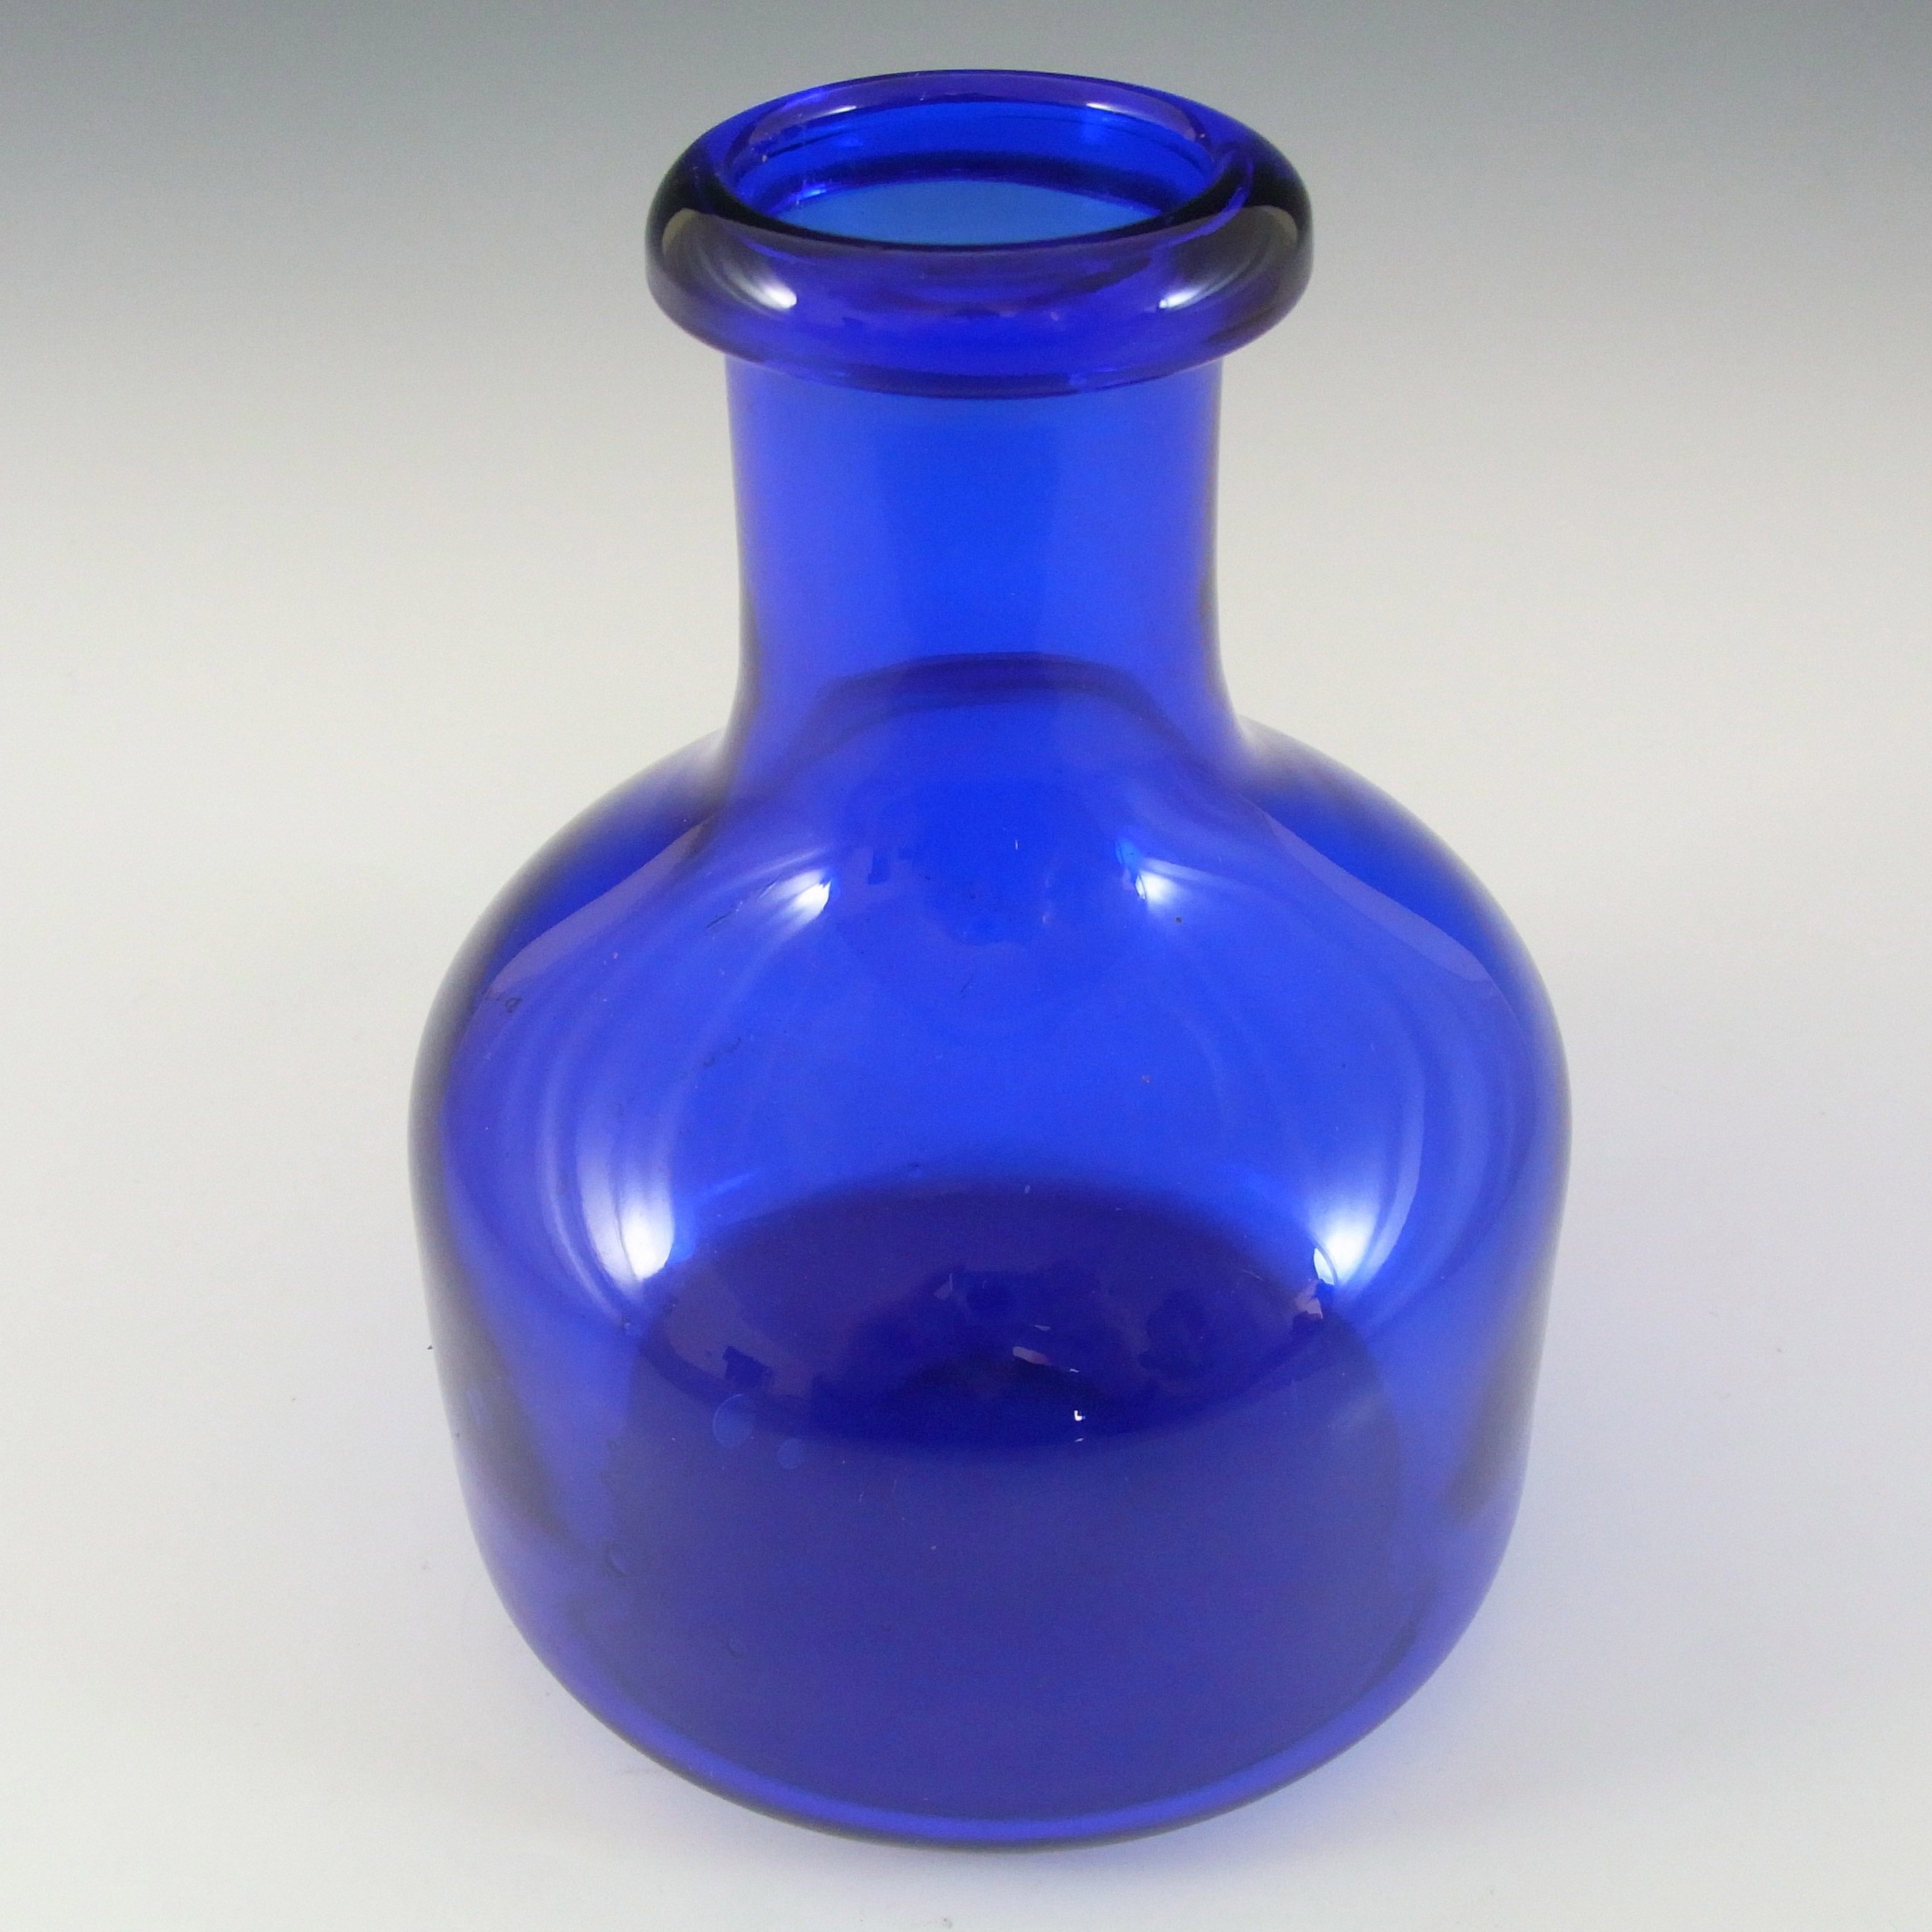 SIGNED Kosta Boda Blue Glass Swedish Vase by Erik Hoglund - Click Image to Close